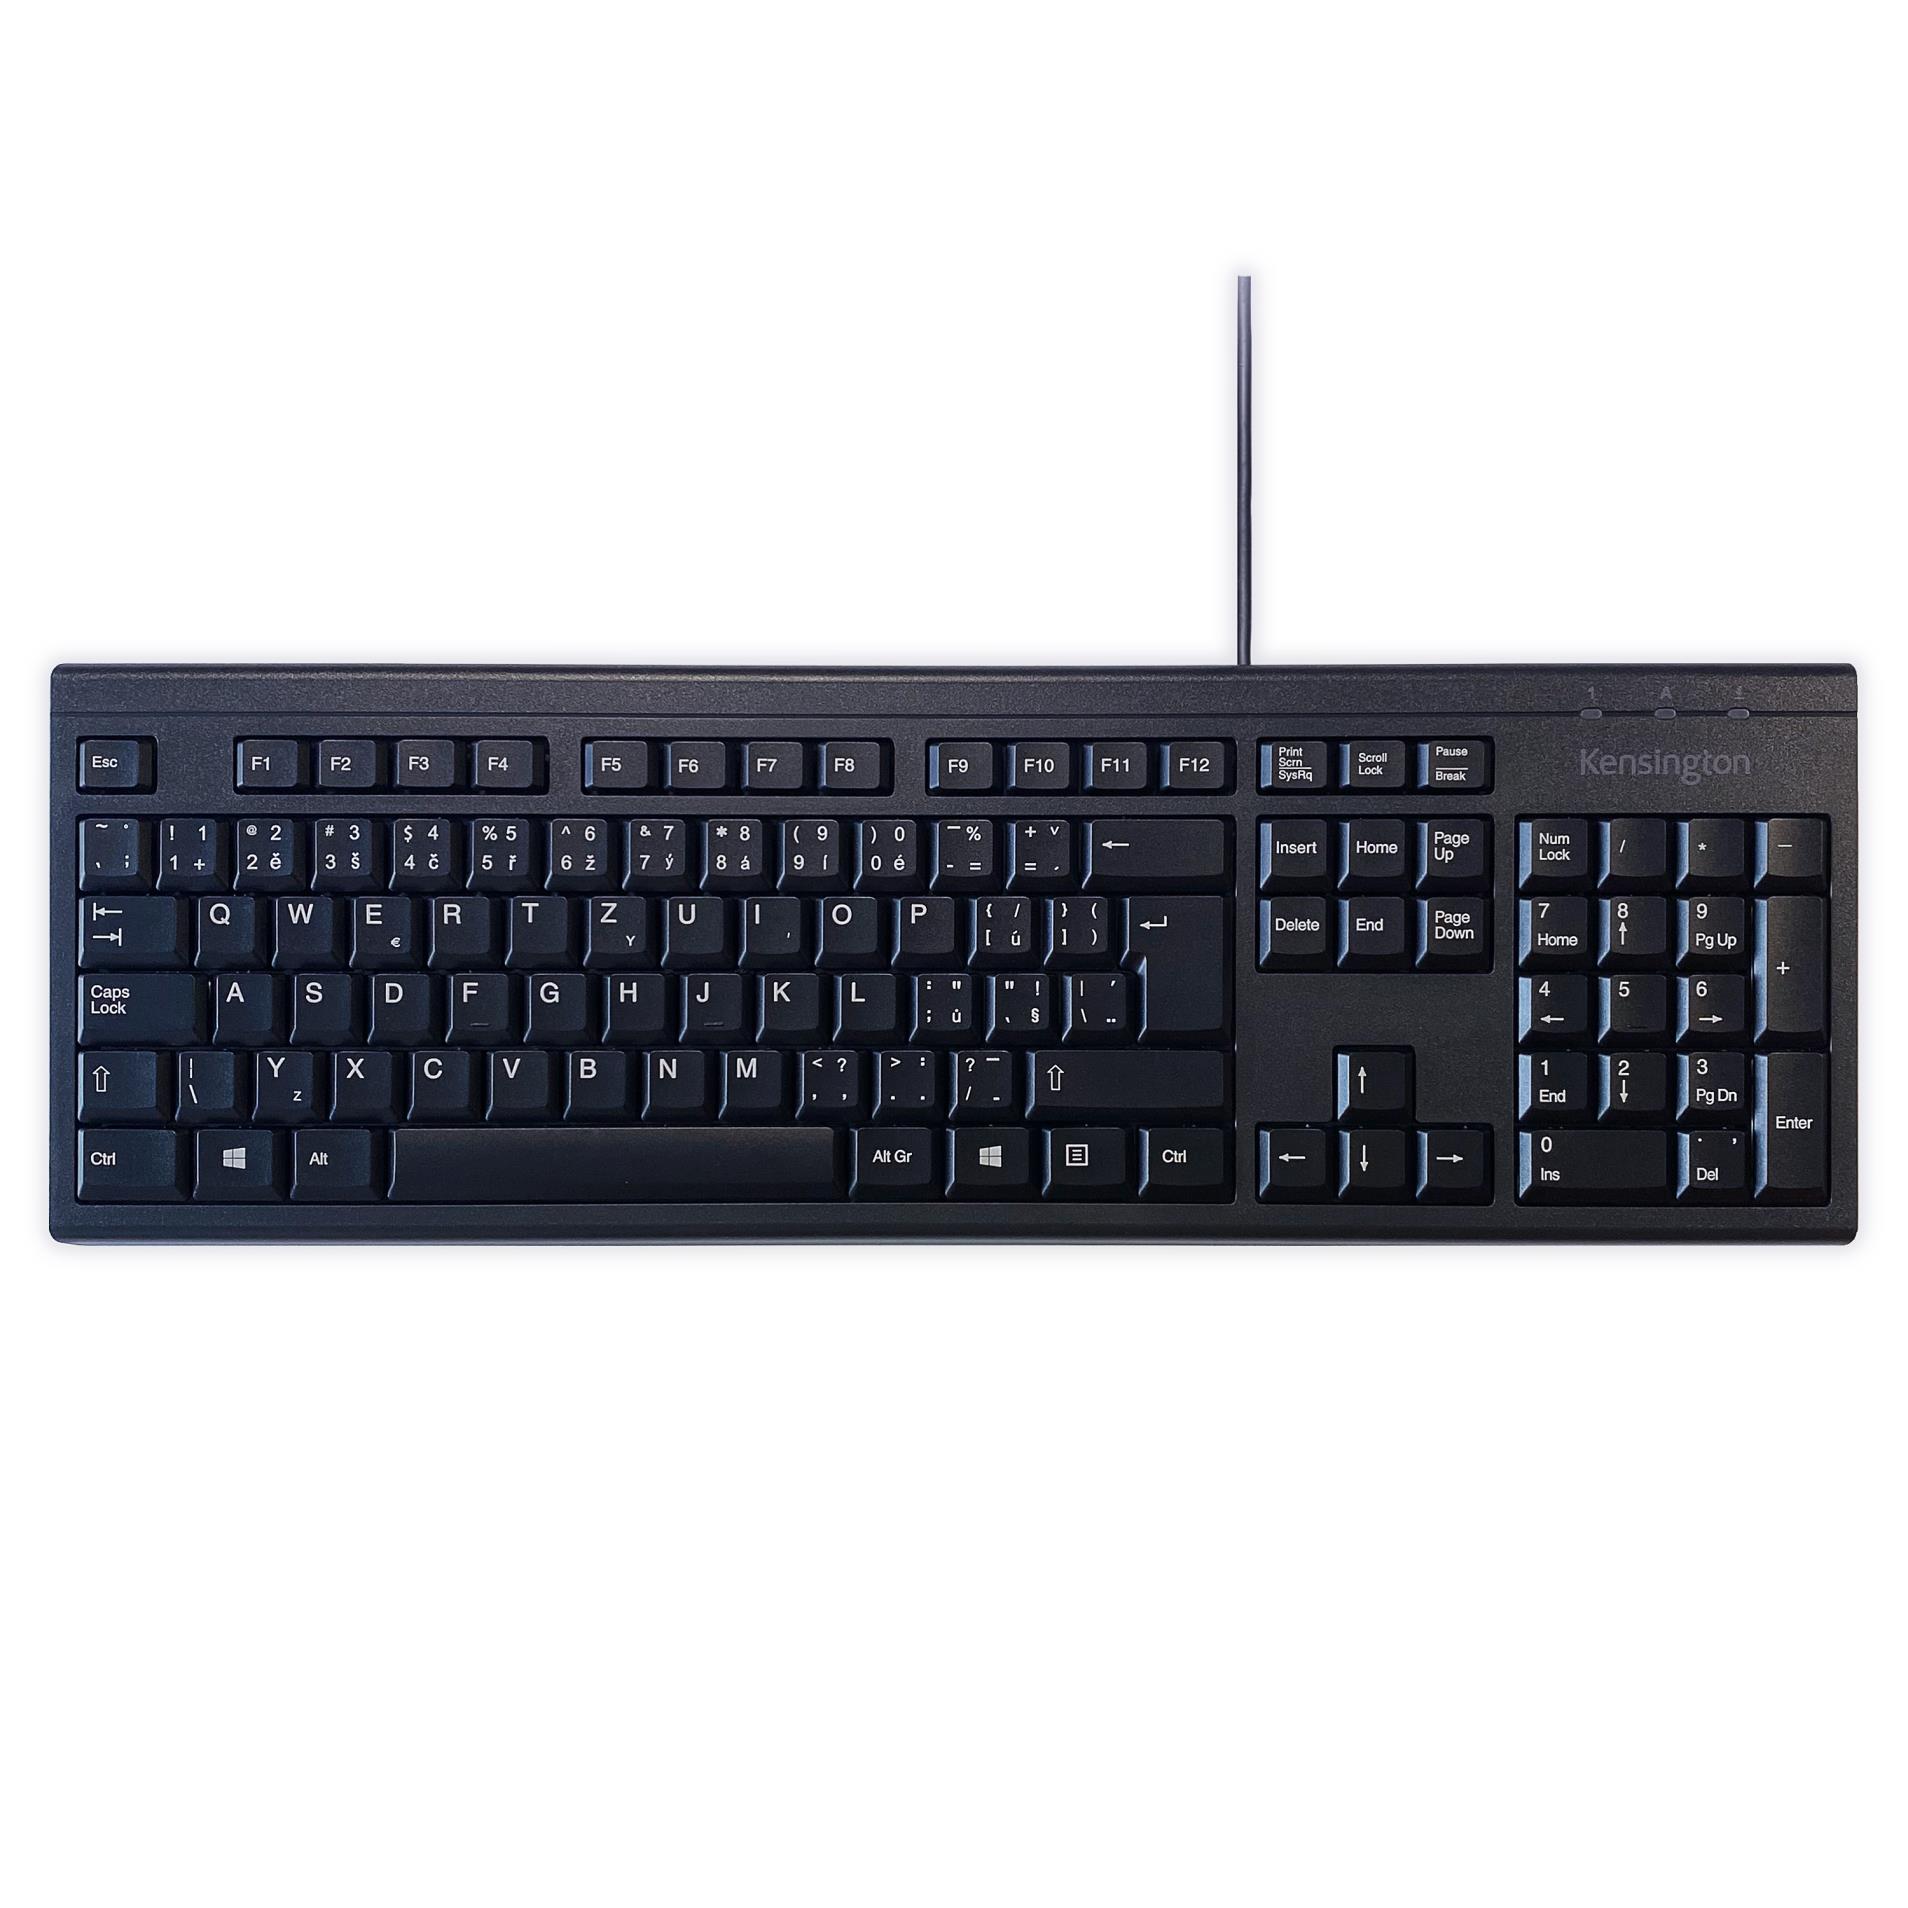 Omyvatelná drátová klávesnice Kensington - CZ, černá